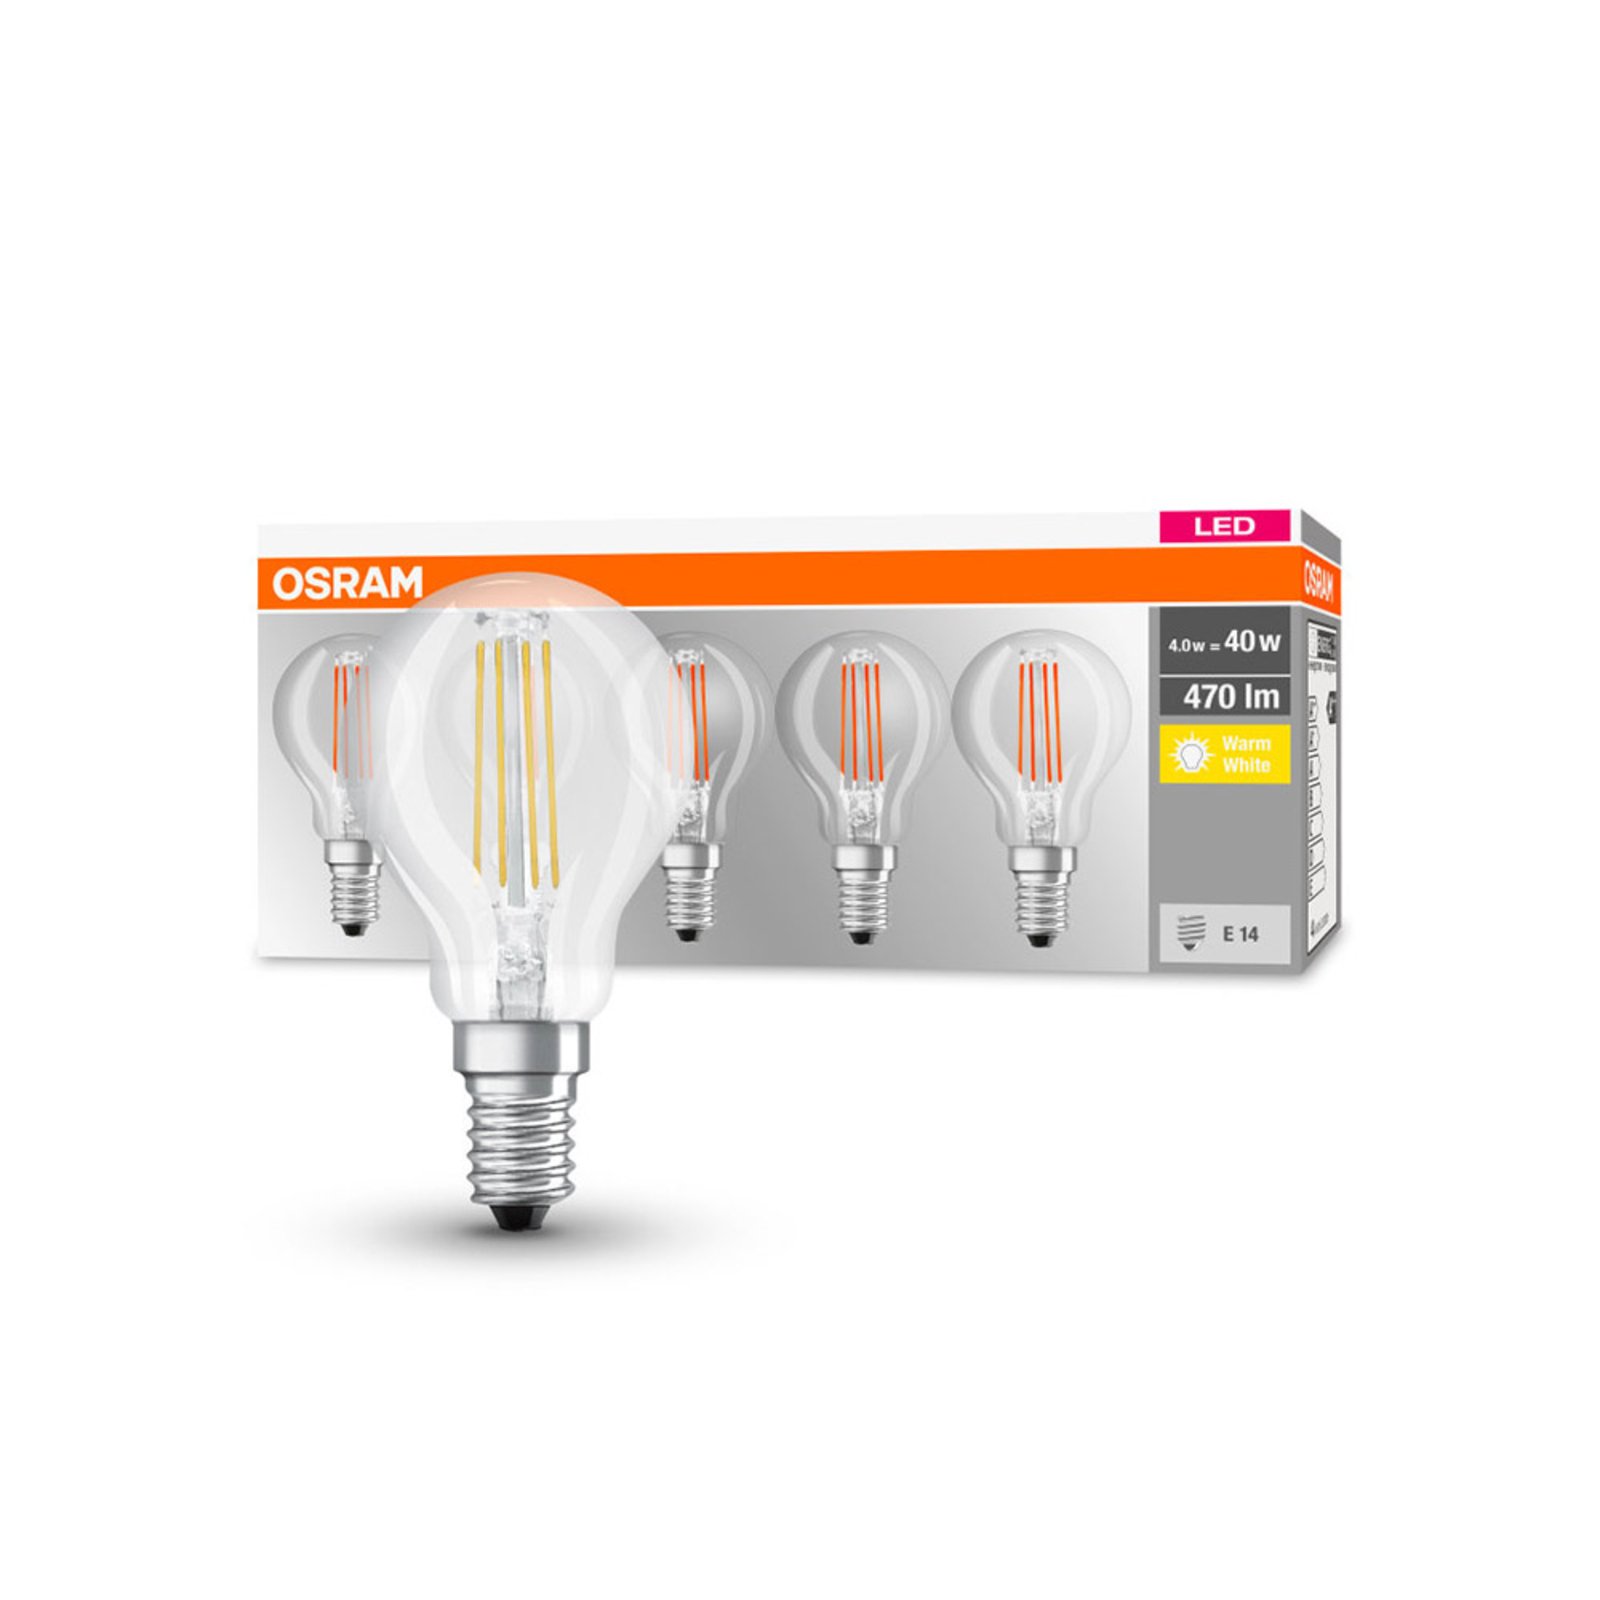 OSRAM ampoule LED E14 P40 4W filament 827 470lm x5